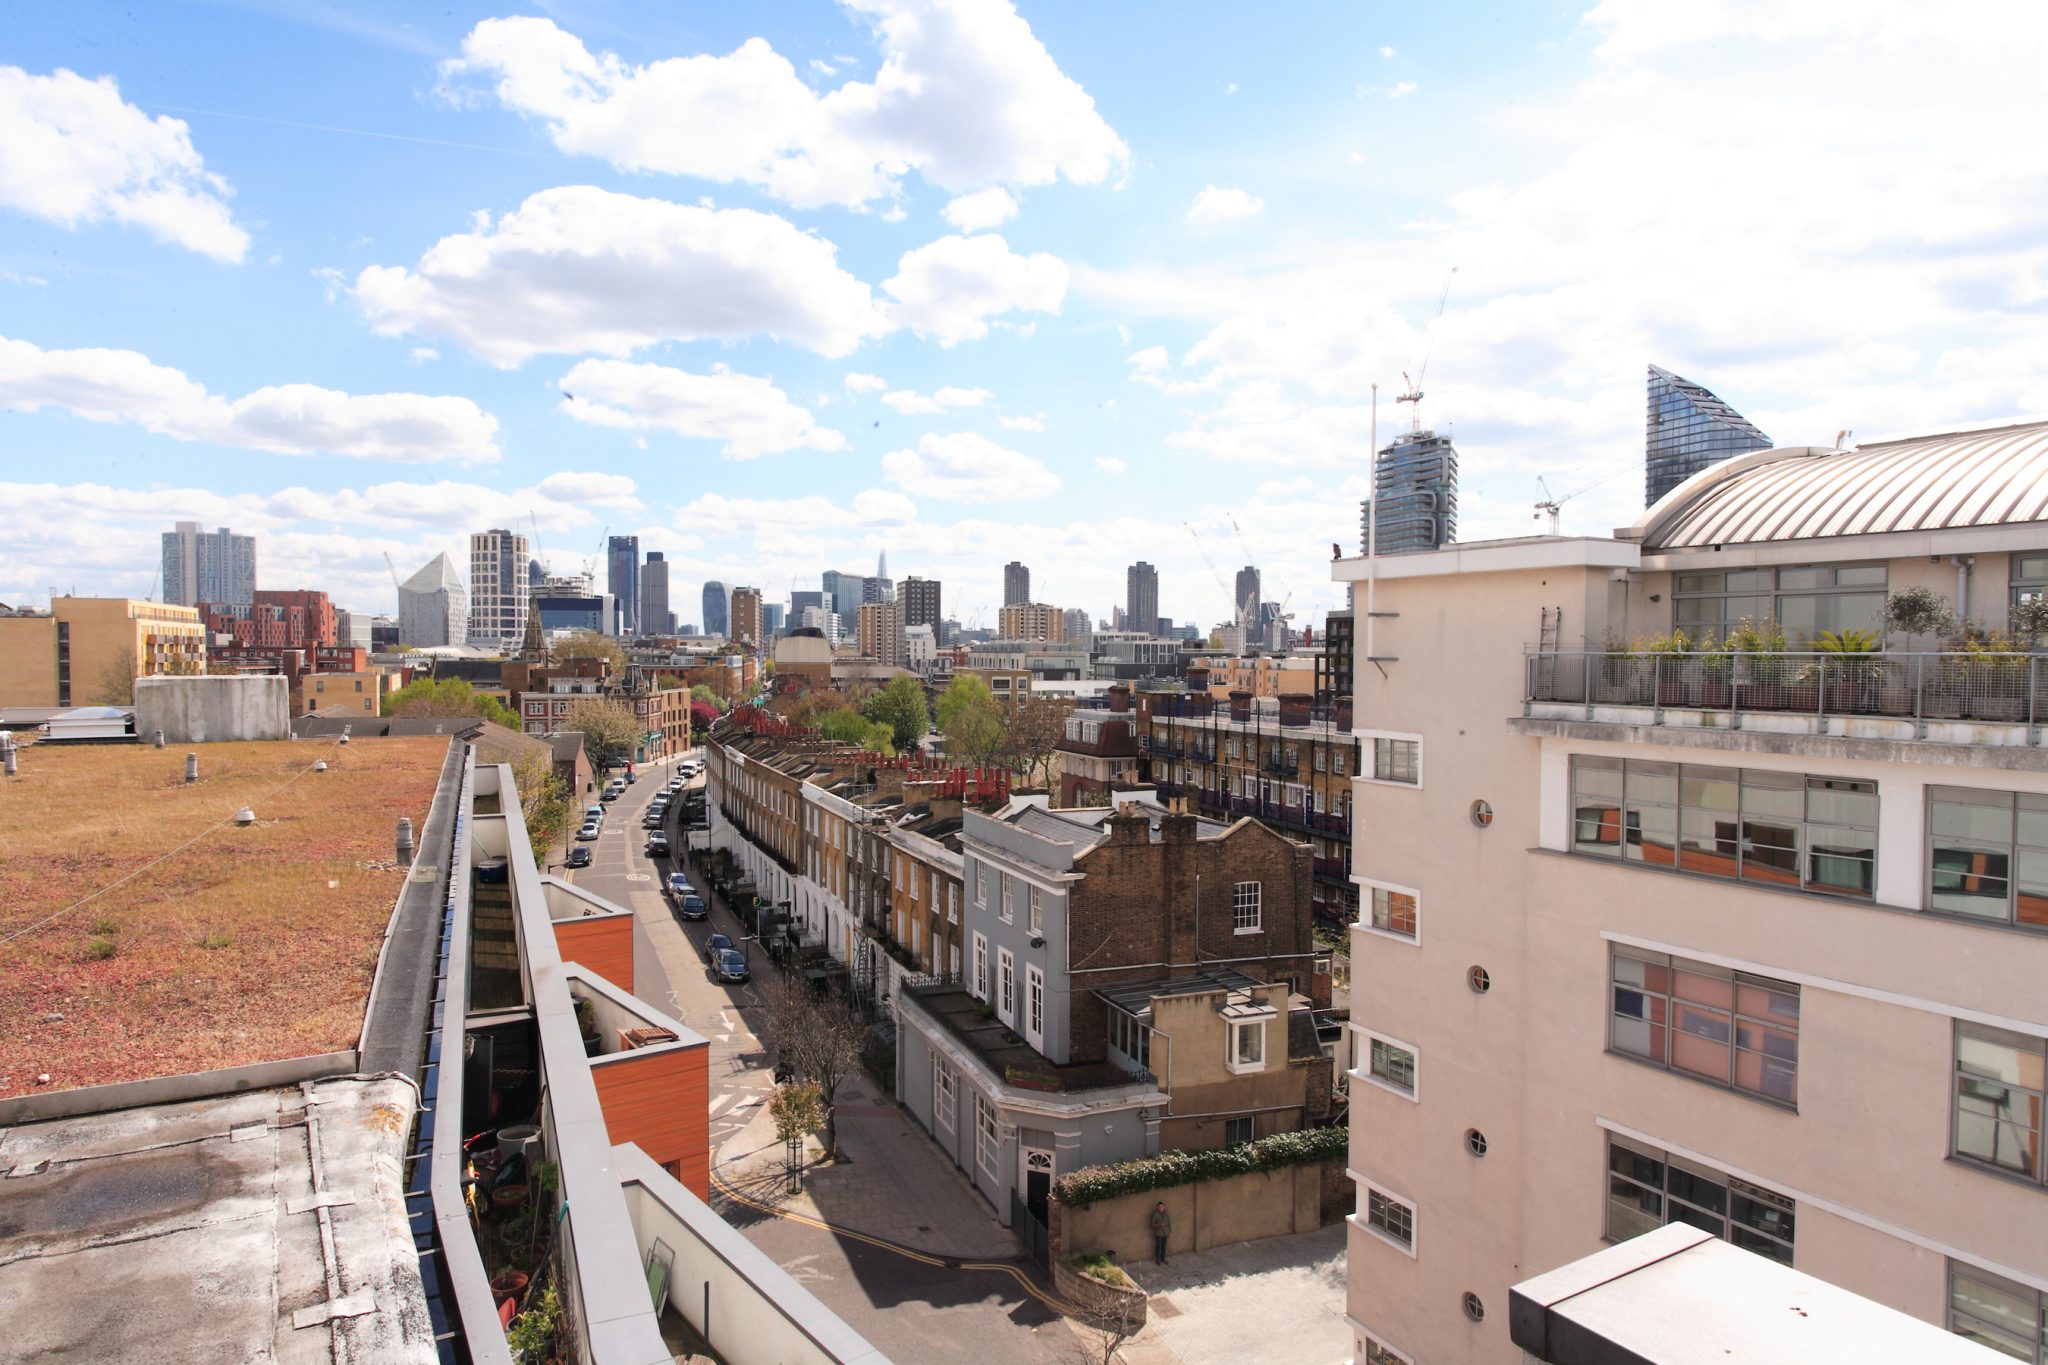 Birds eye view of London